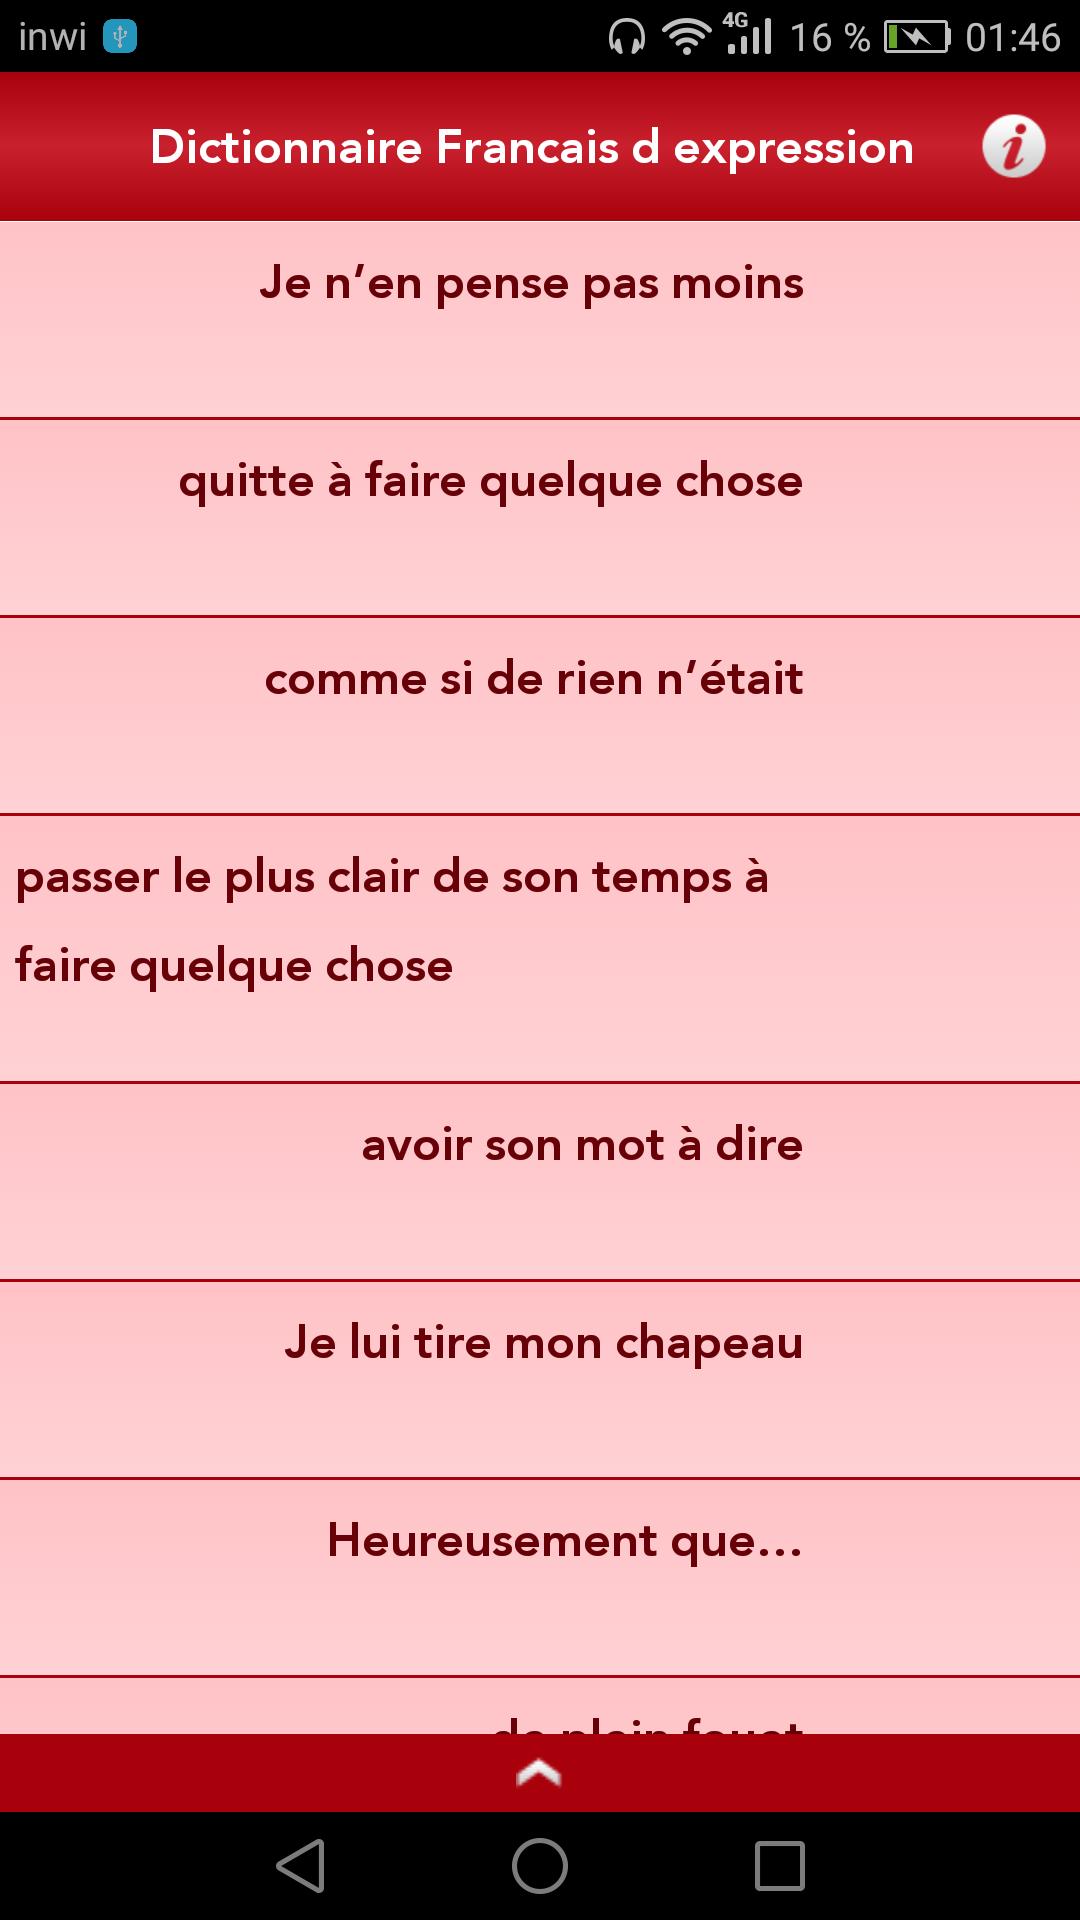 Dictionnaire Français d'expression for Android - APK Download